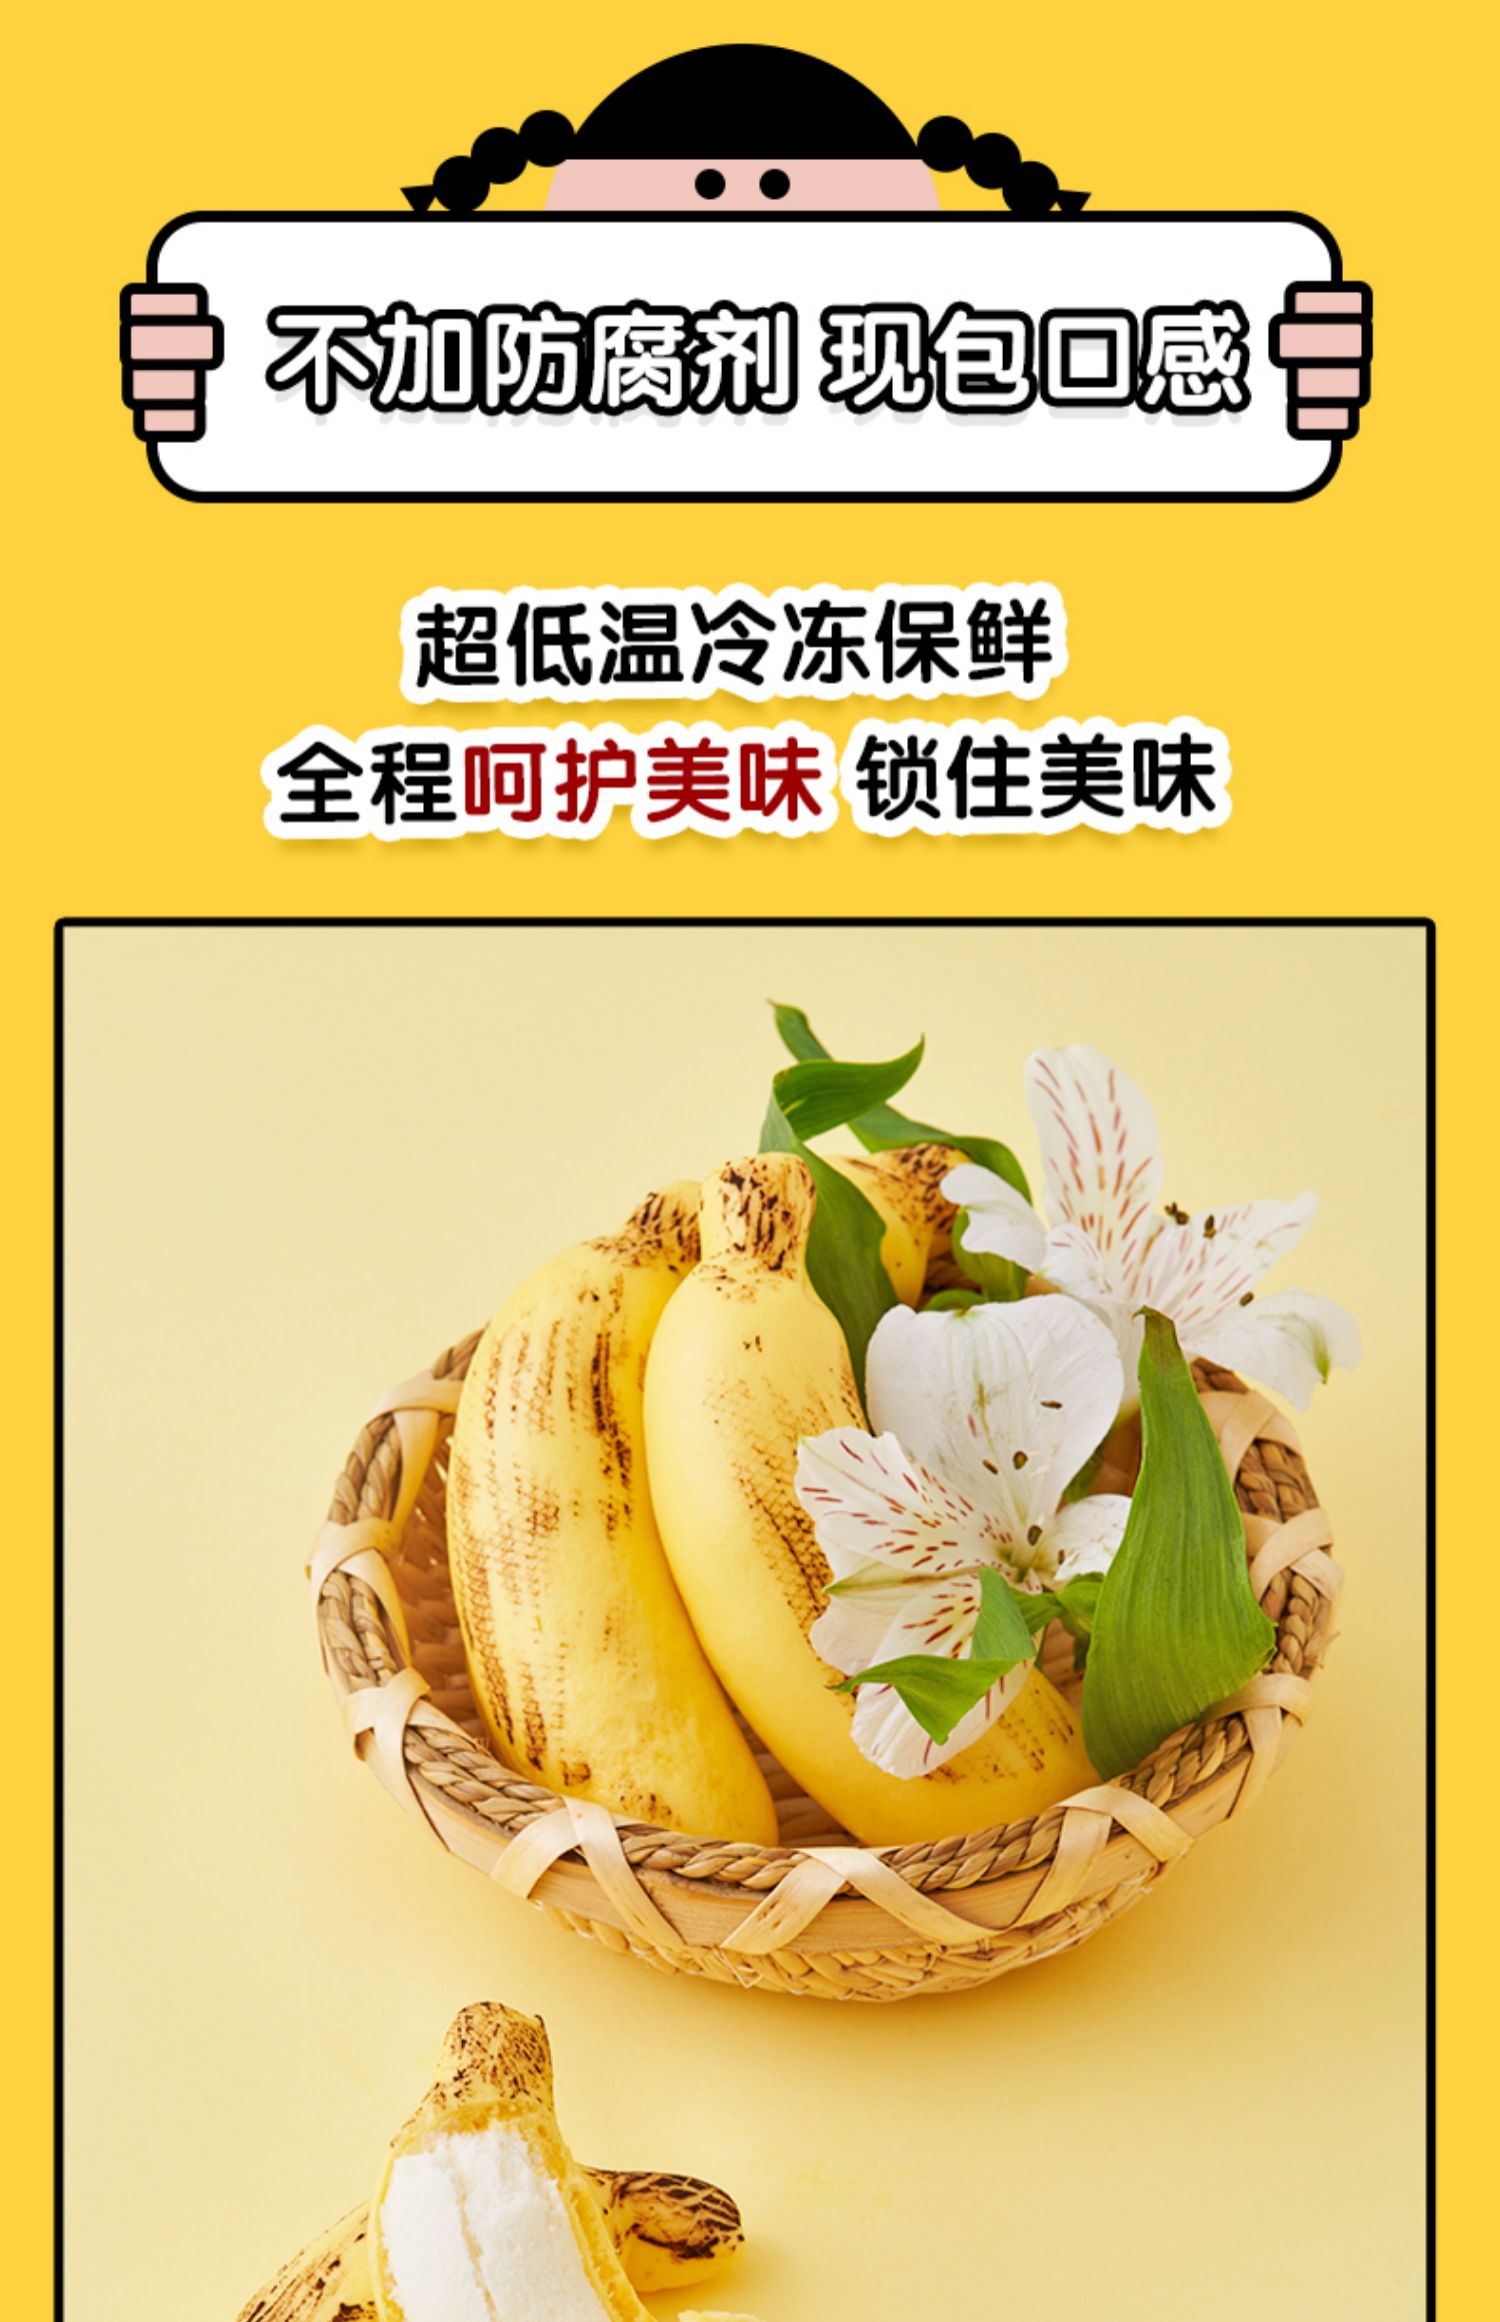 【北记】2包慕斯香蕉包速食营养早餐